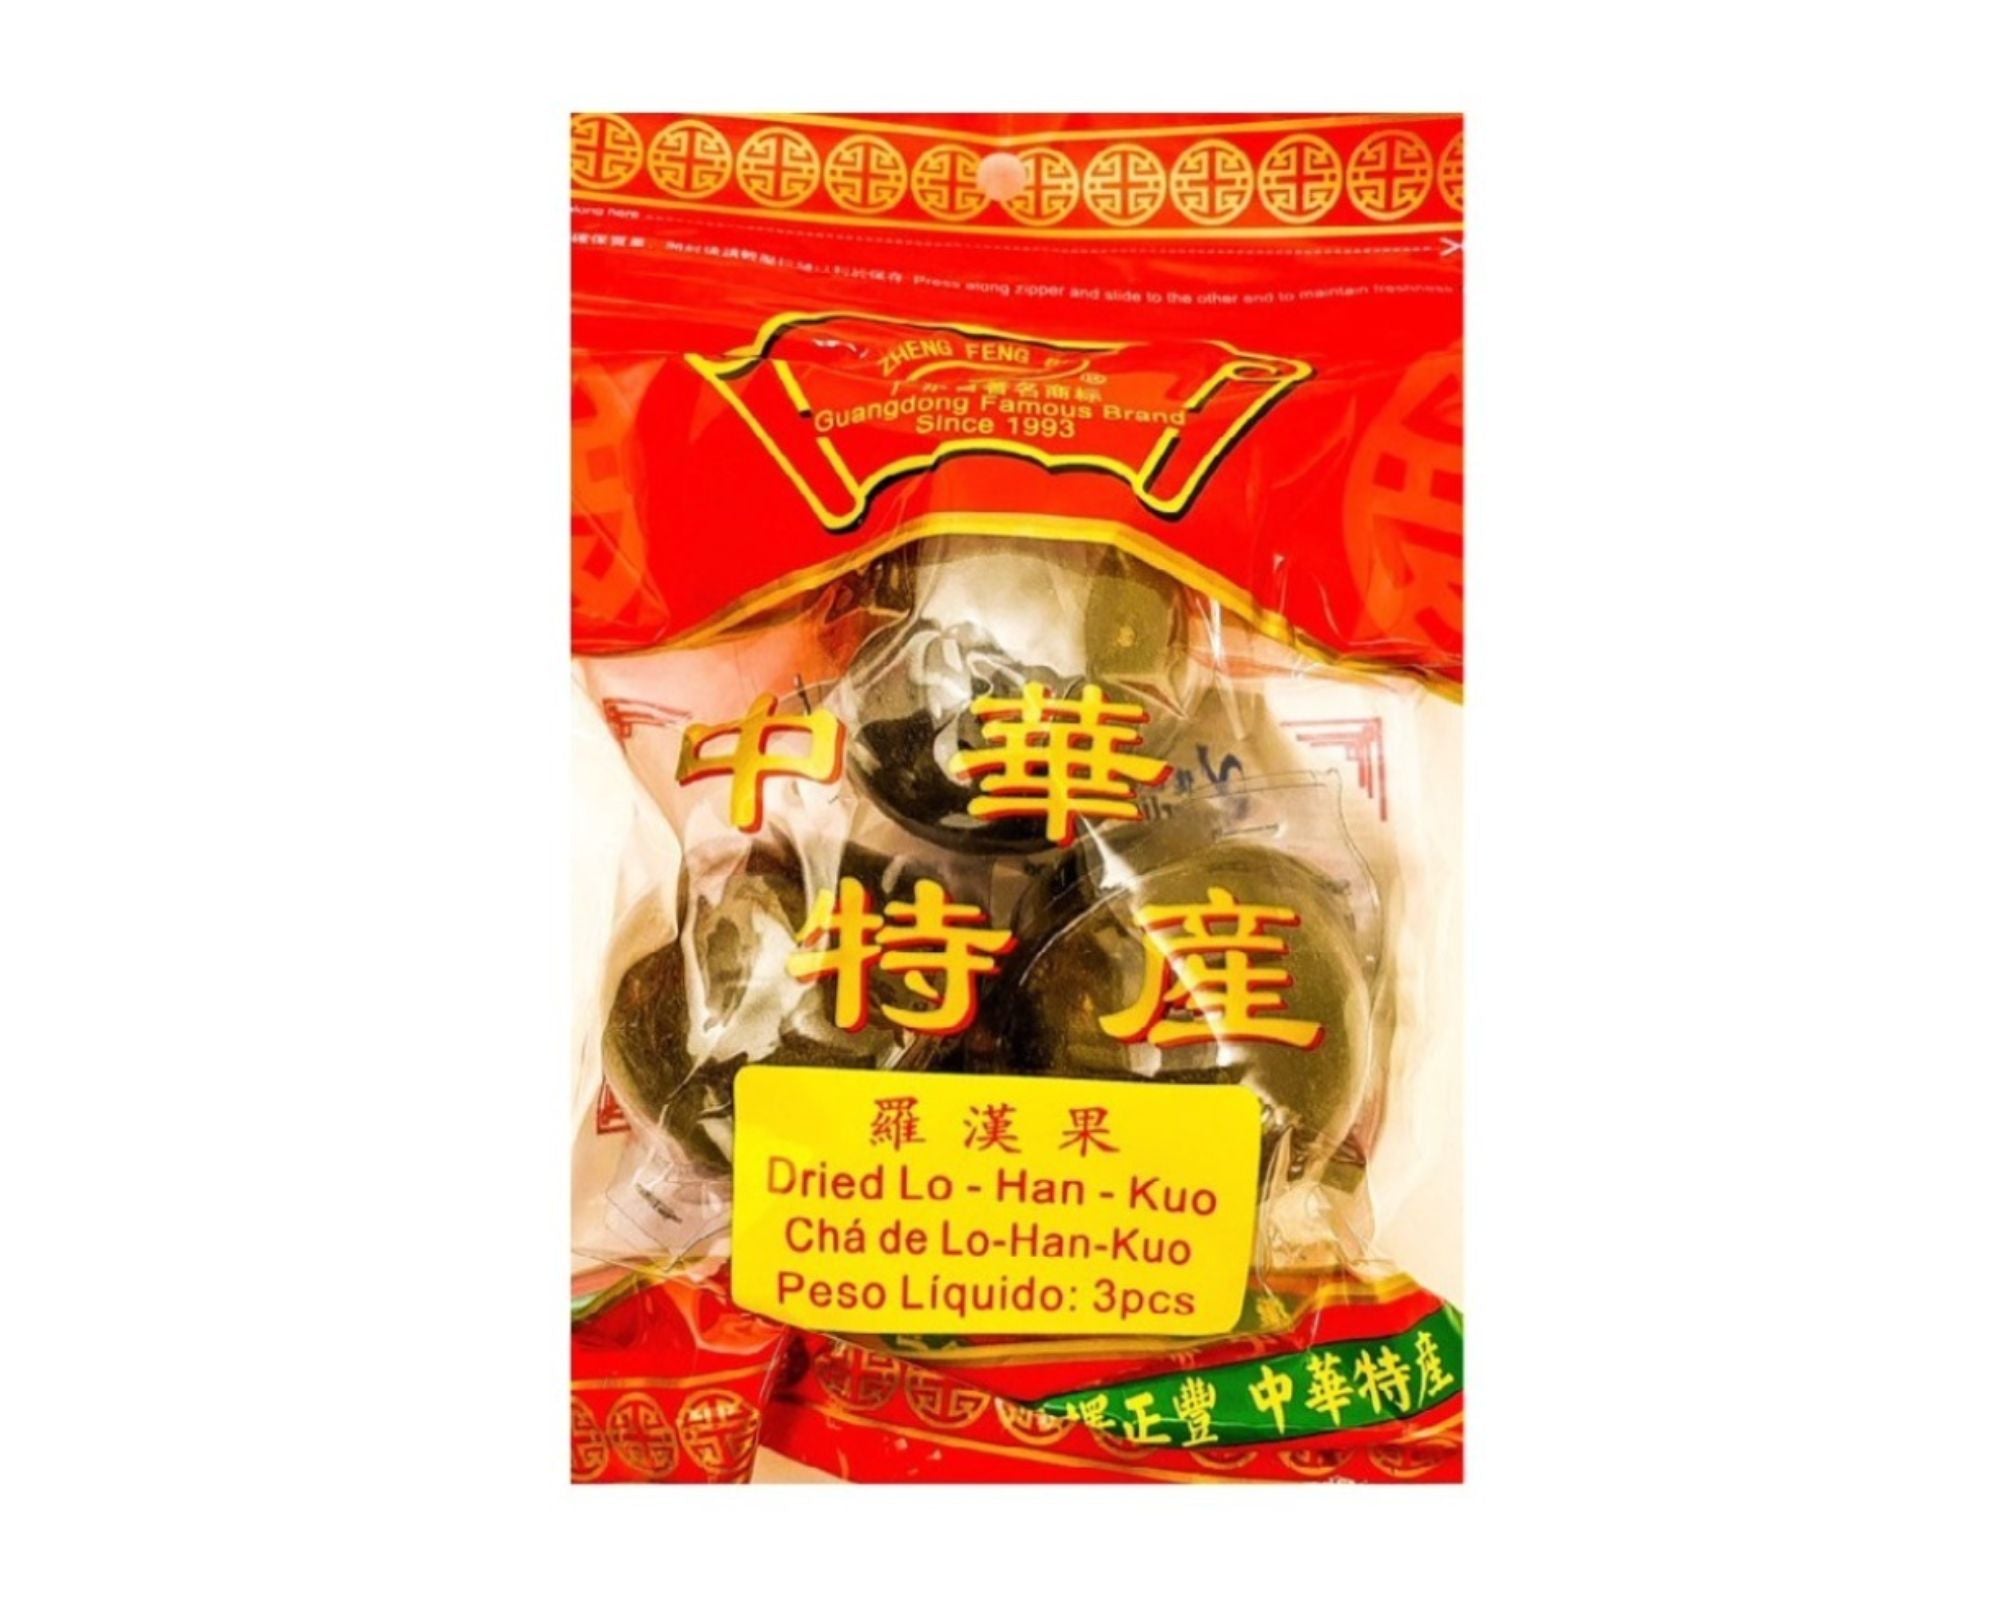 Chá De Lo-han-kuo (Dried Lo-han-kuo) - Zheng Feng Brand - 3 peças